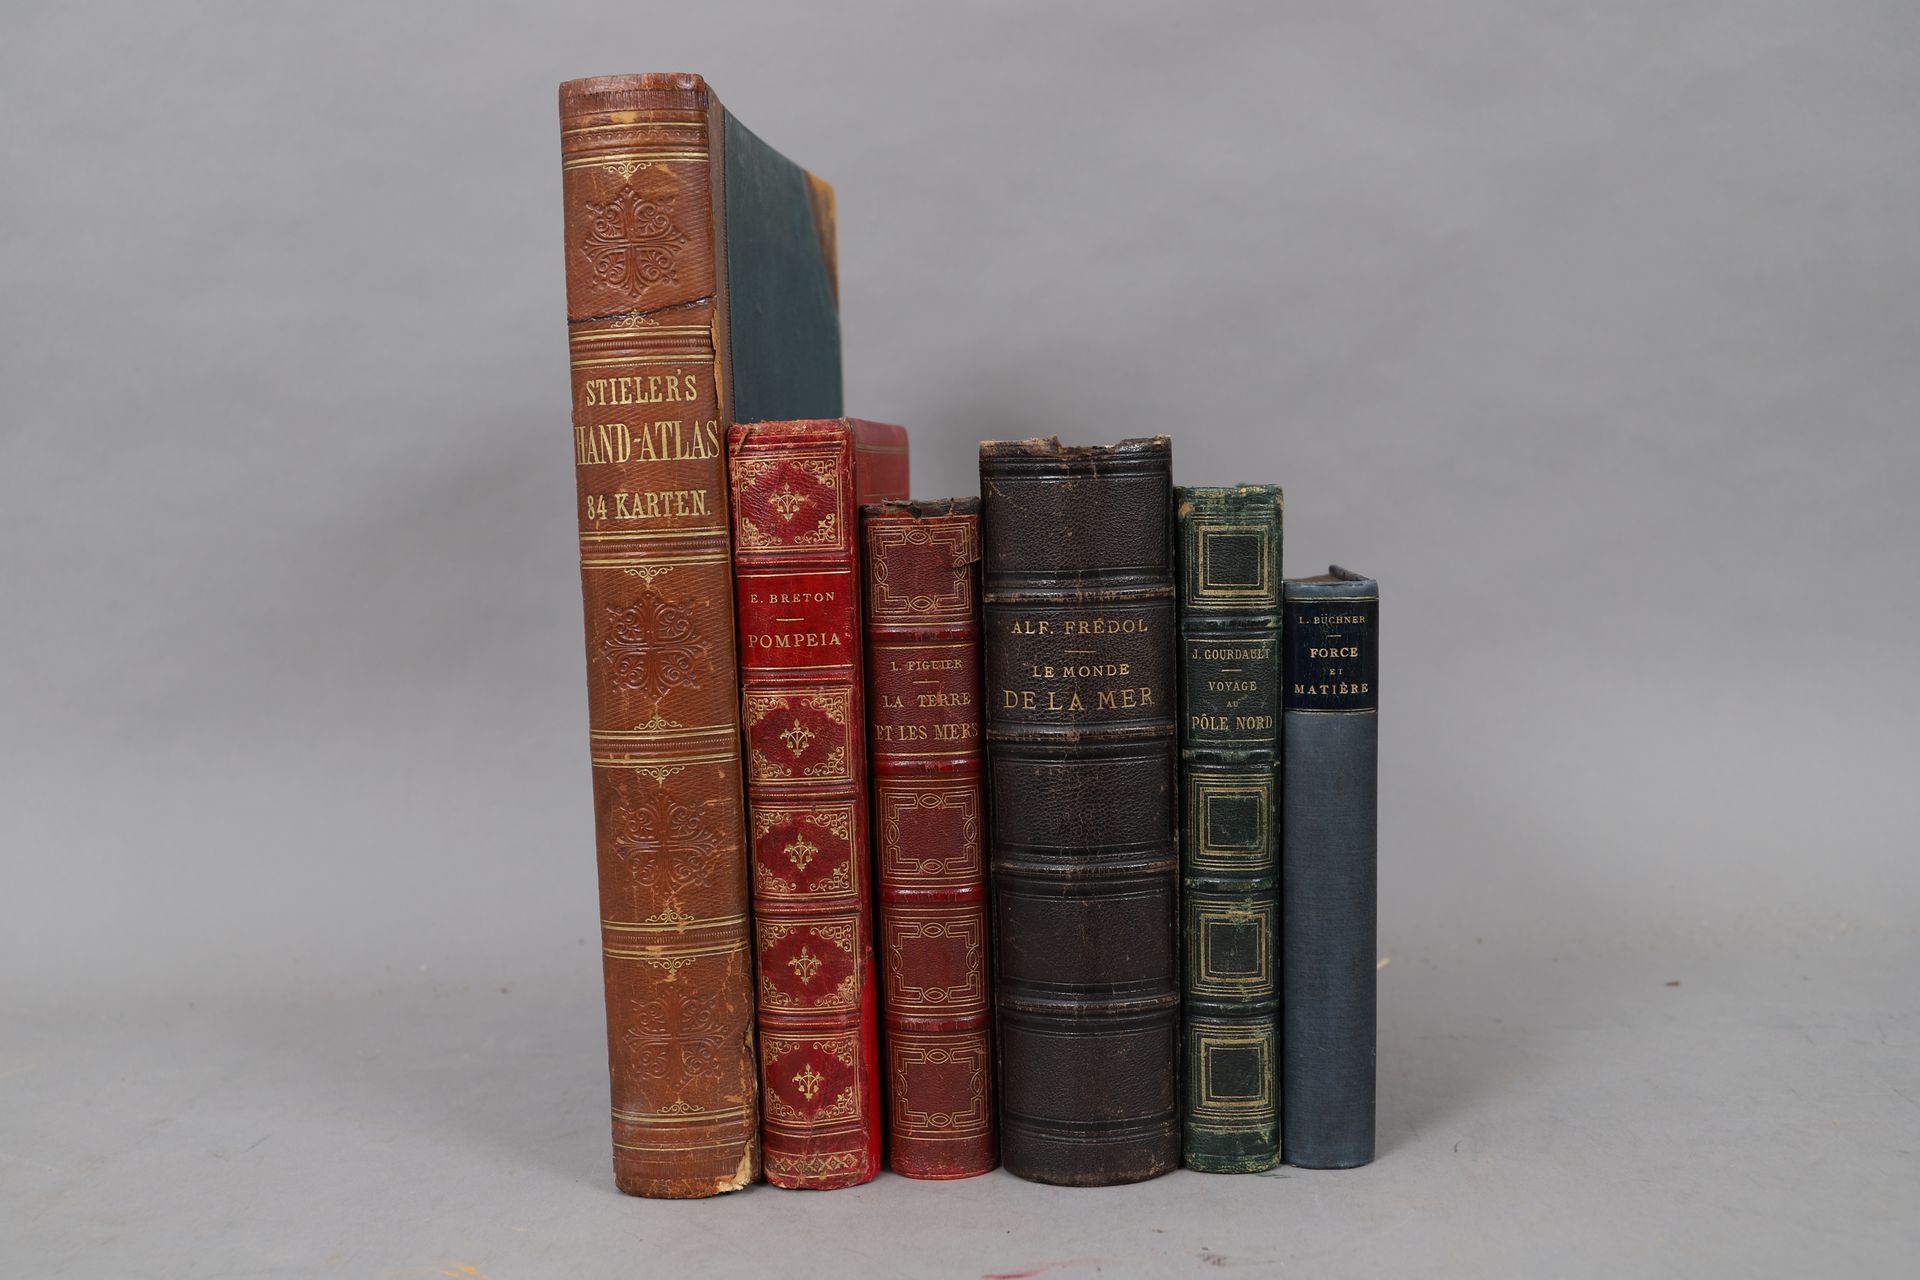 Null VOYAGES et GEOGRAPHIE

LOT de 6 volumes reliés

XIXème et XXème